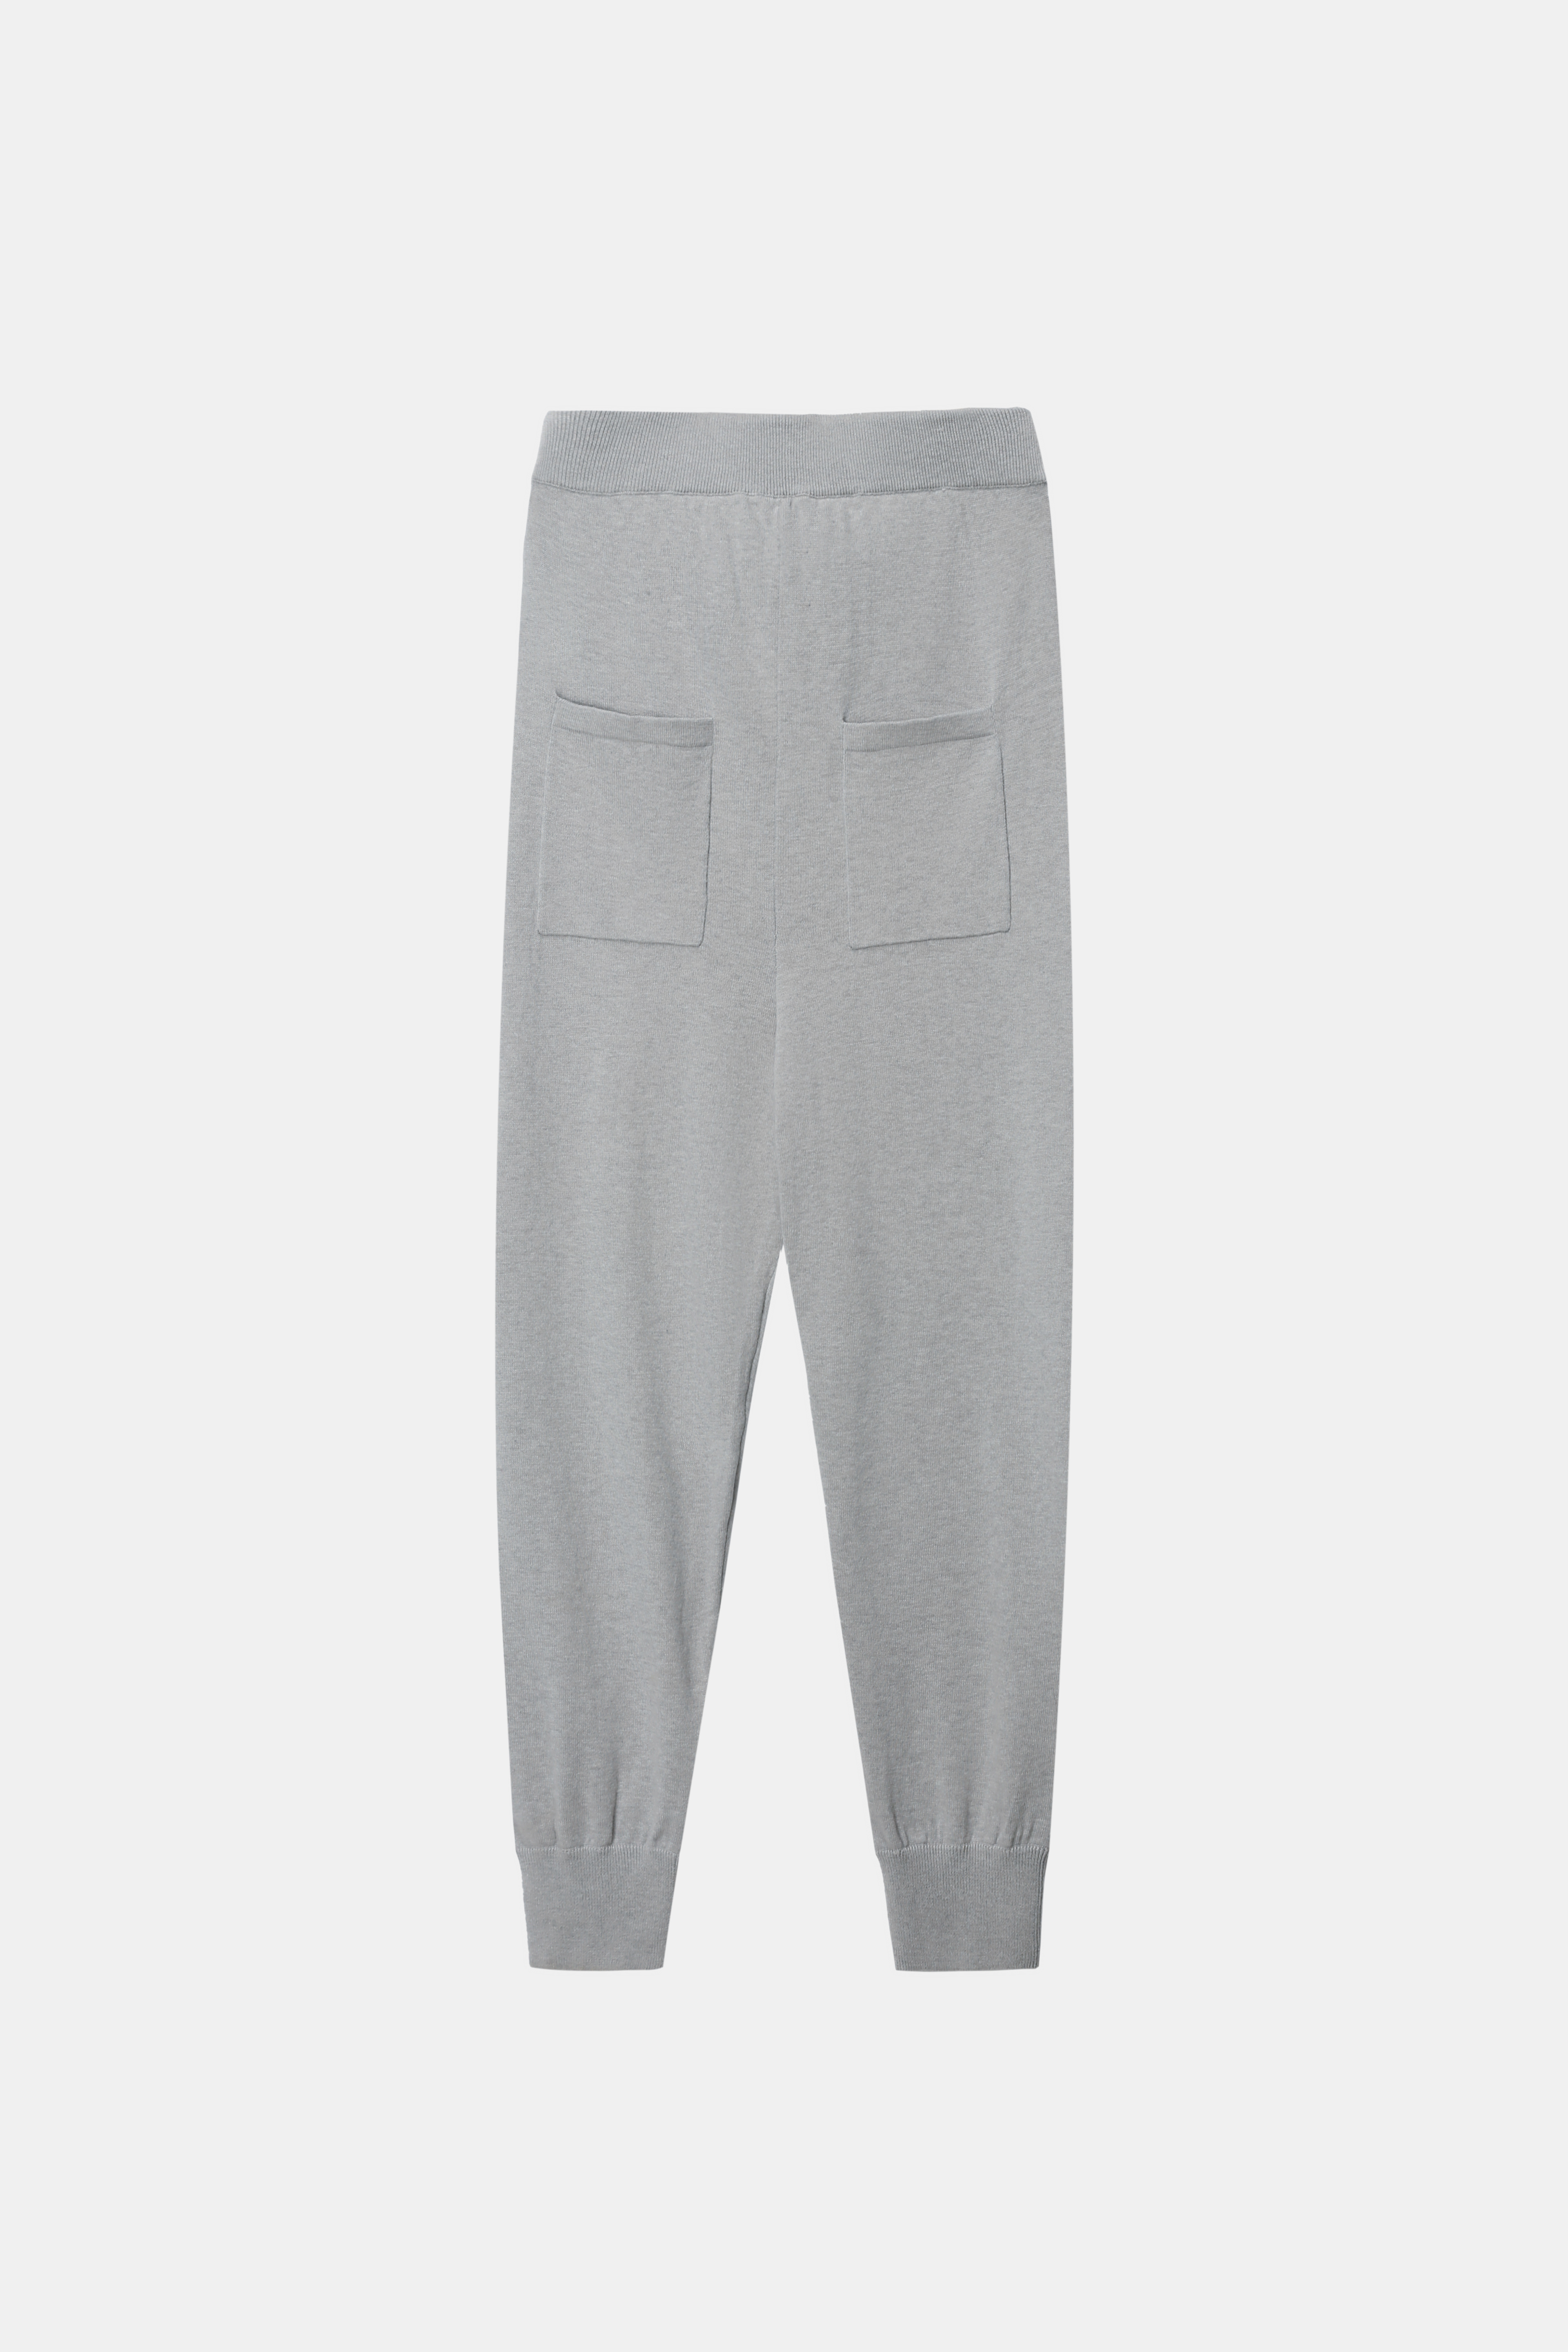 Pantalons gris pour hommes avec des poches